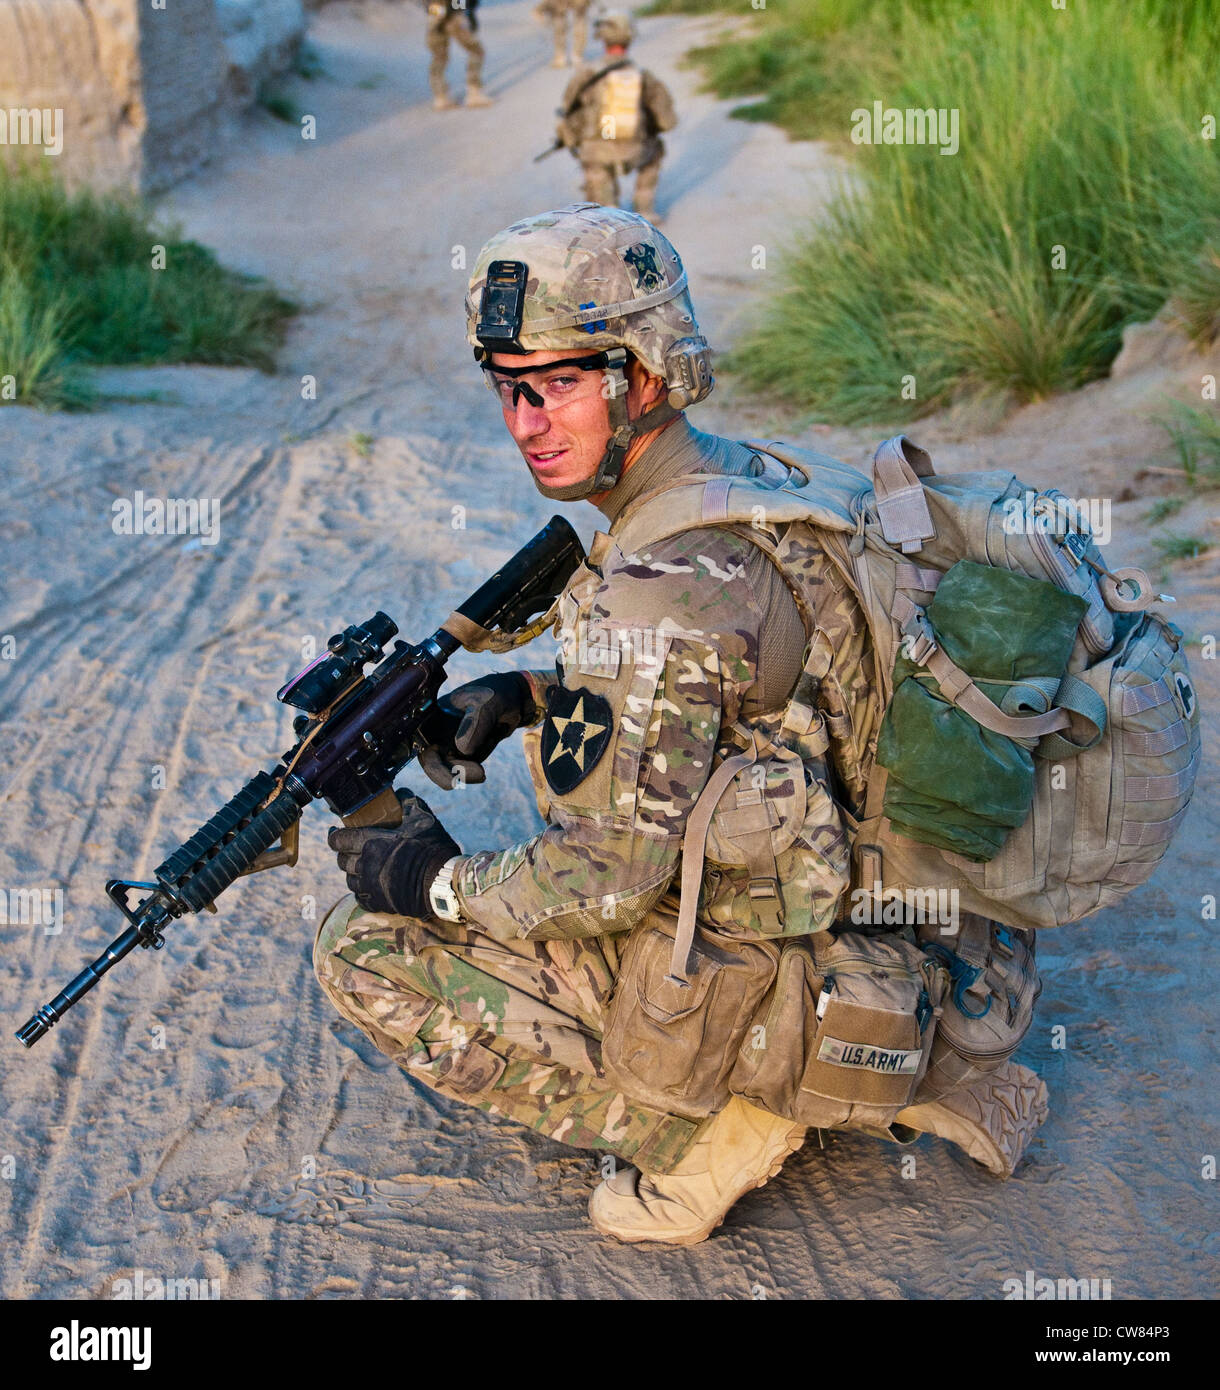 SPC. Blaine Templeton la médoine de peloton avec le 2e peloton, compagnie Apache, 1er Bataillon, 23e Régiment d'infanterie, prend un genou alors qu'elle fait une patrouille à pied dans un petit village du sud de l'Afghanistan, le 1er août 2012. Banque D'Images